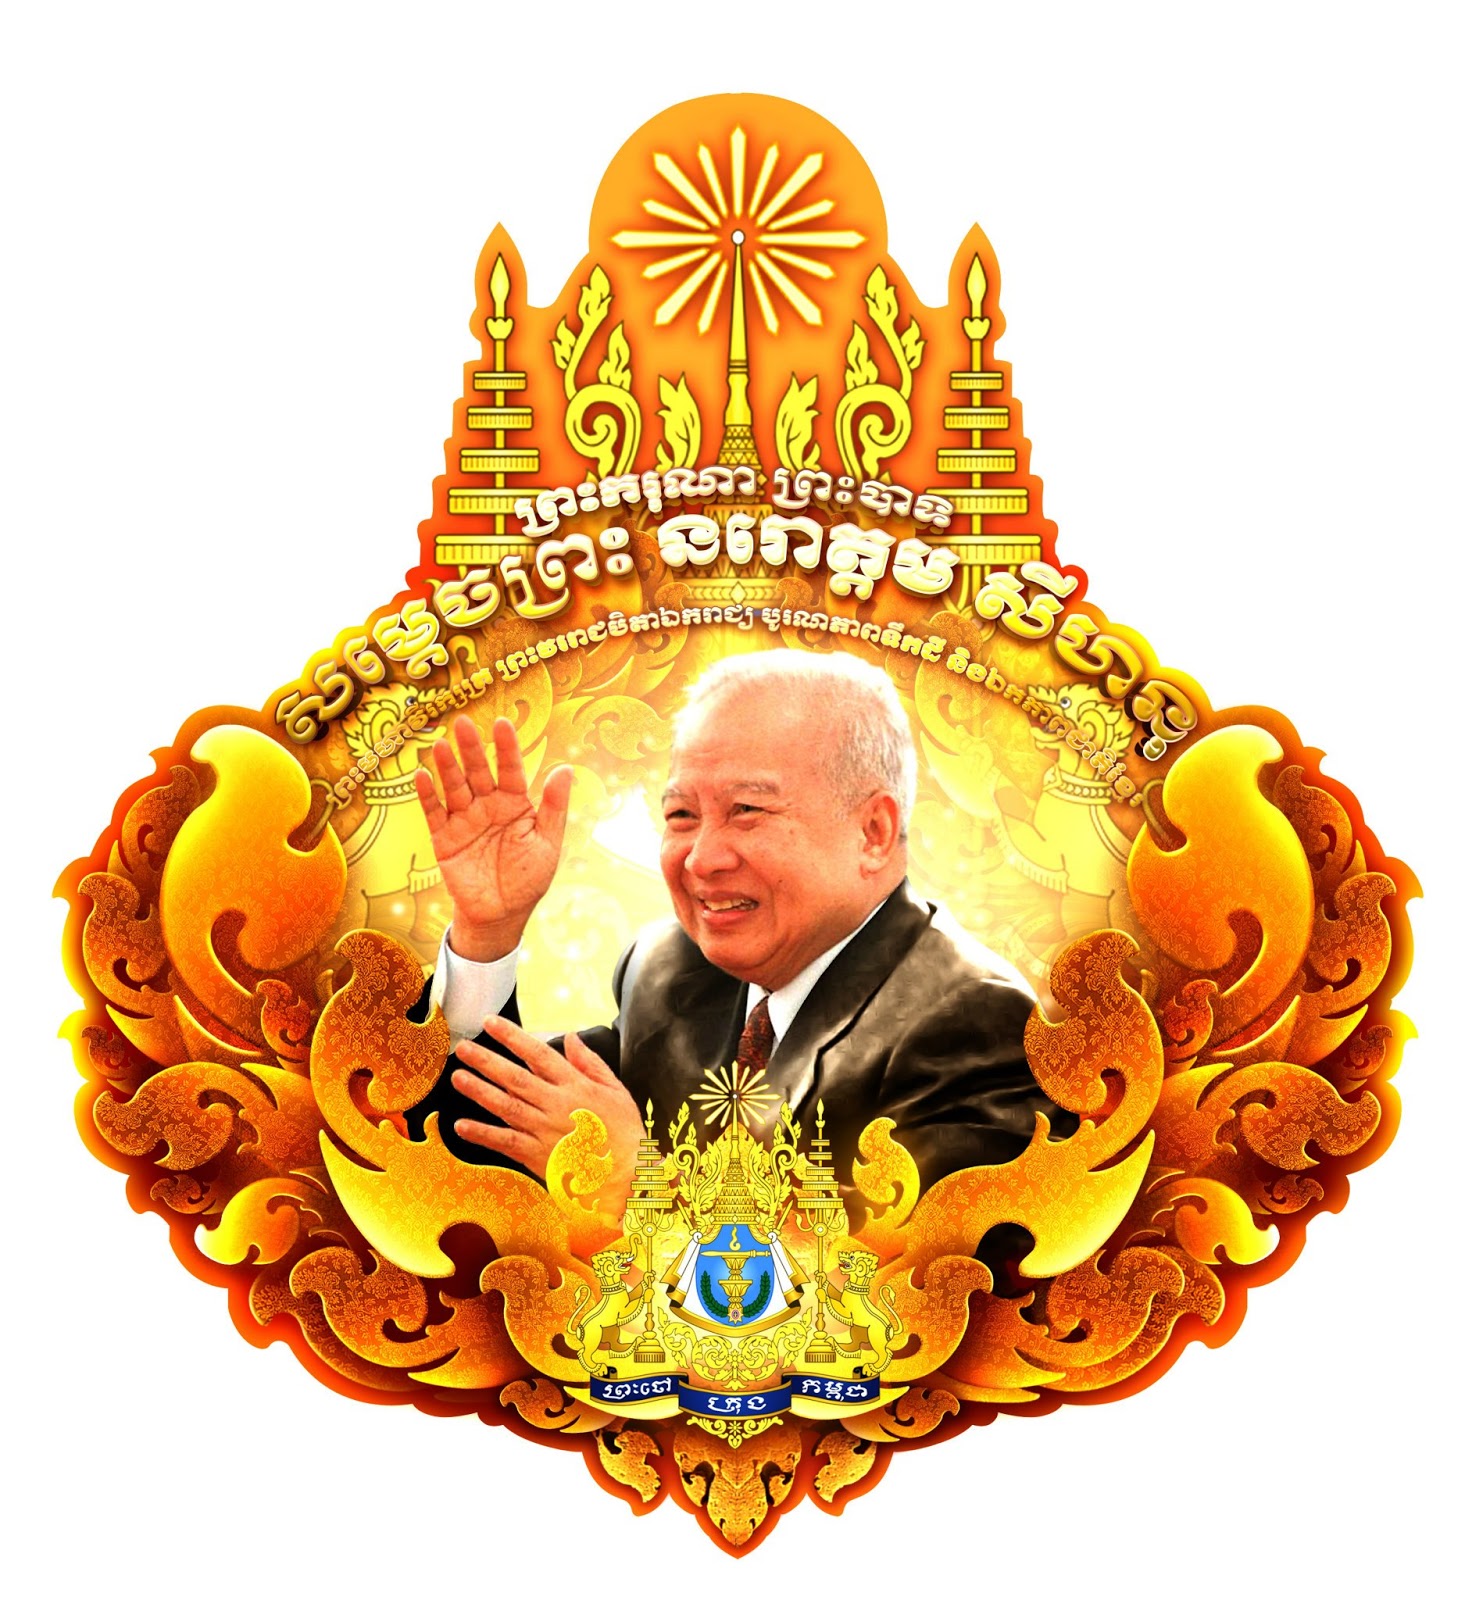 King Noromdom Sihanouk